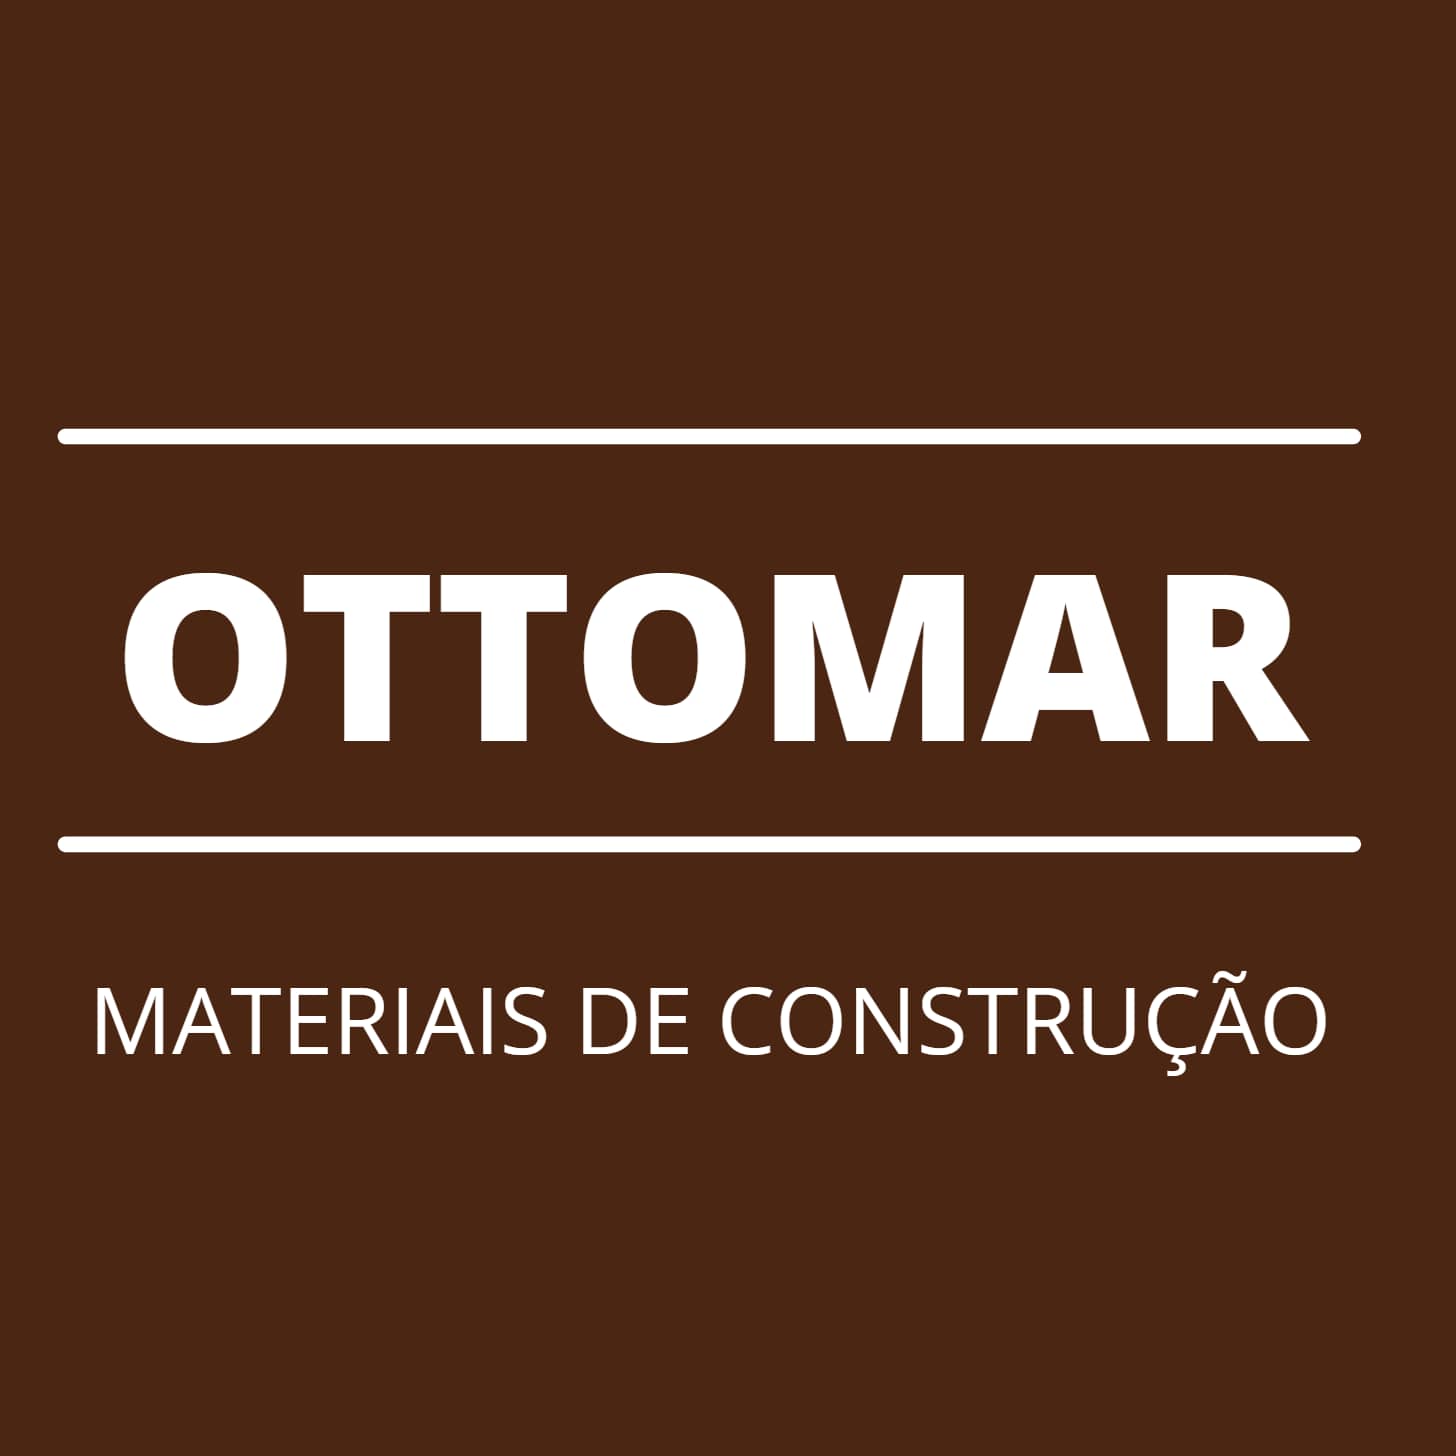 Ottomar Materiais de Construção